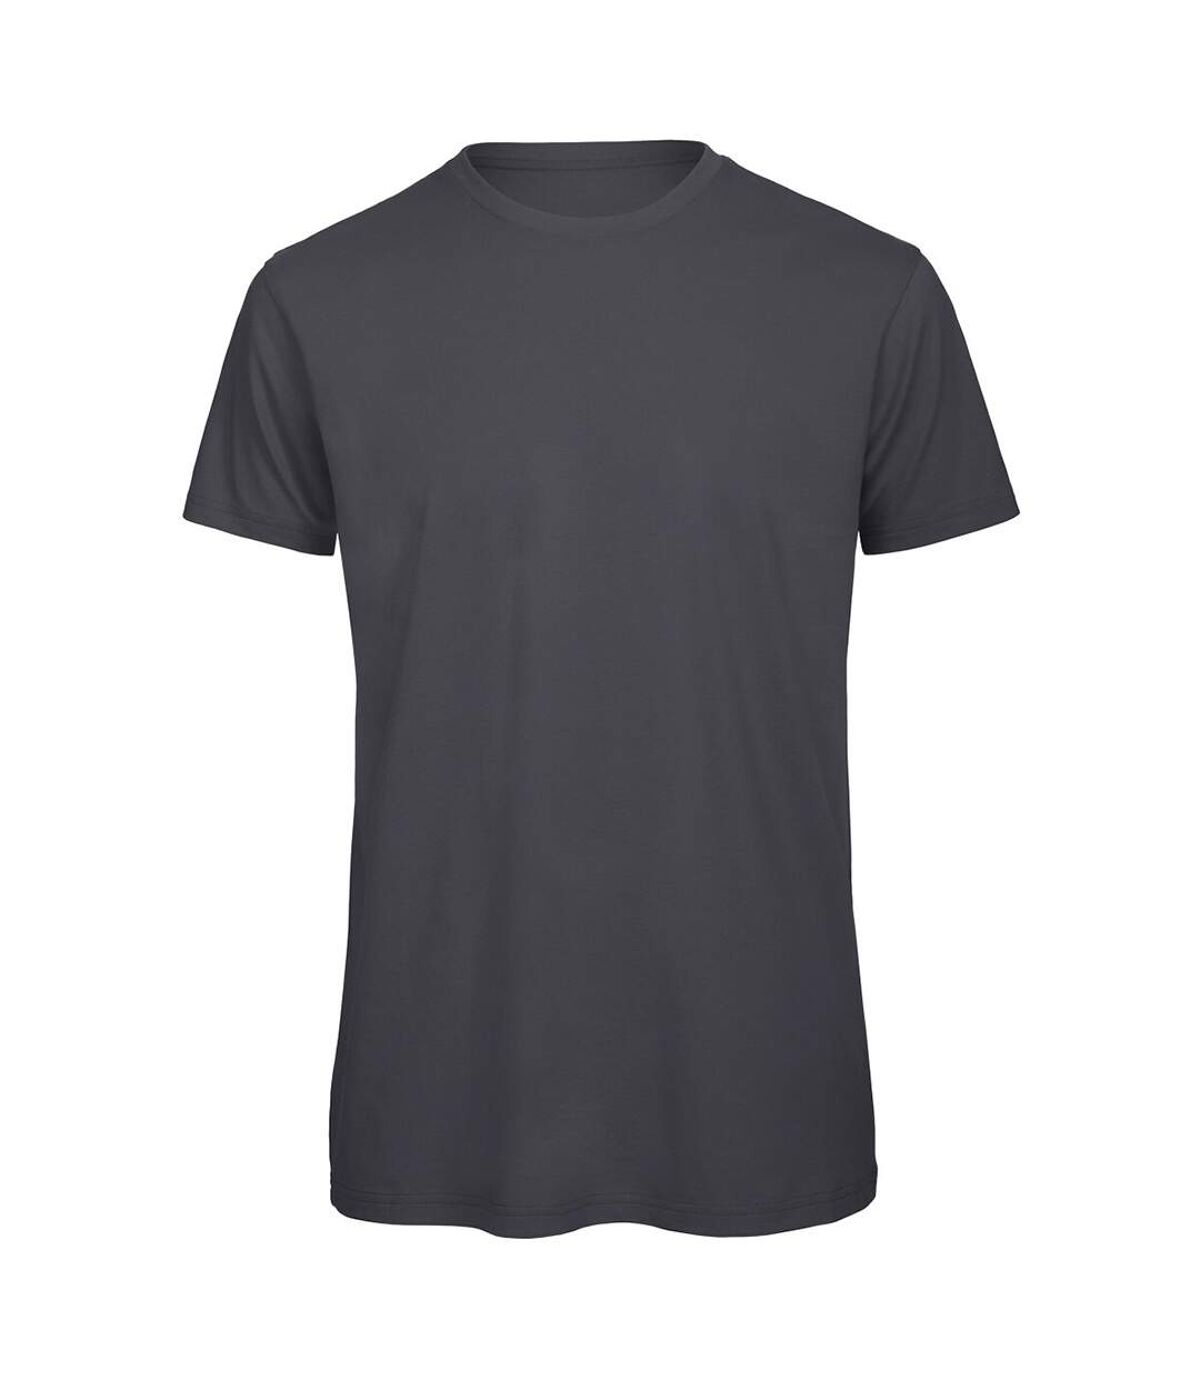 B&C Mens Favourite Organic Cotton Crew T-Shirt (Dark Gray)